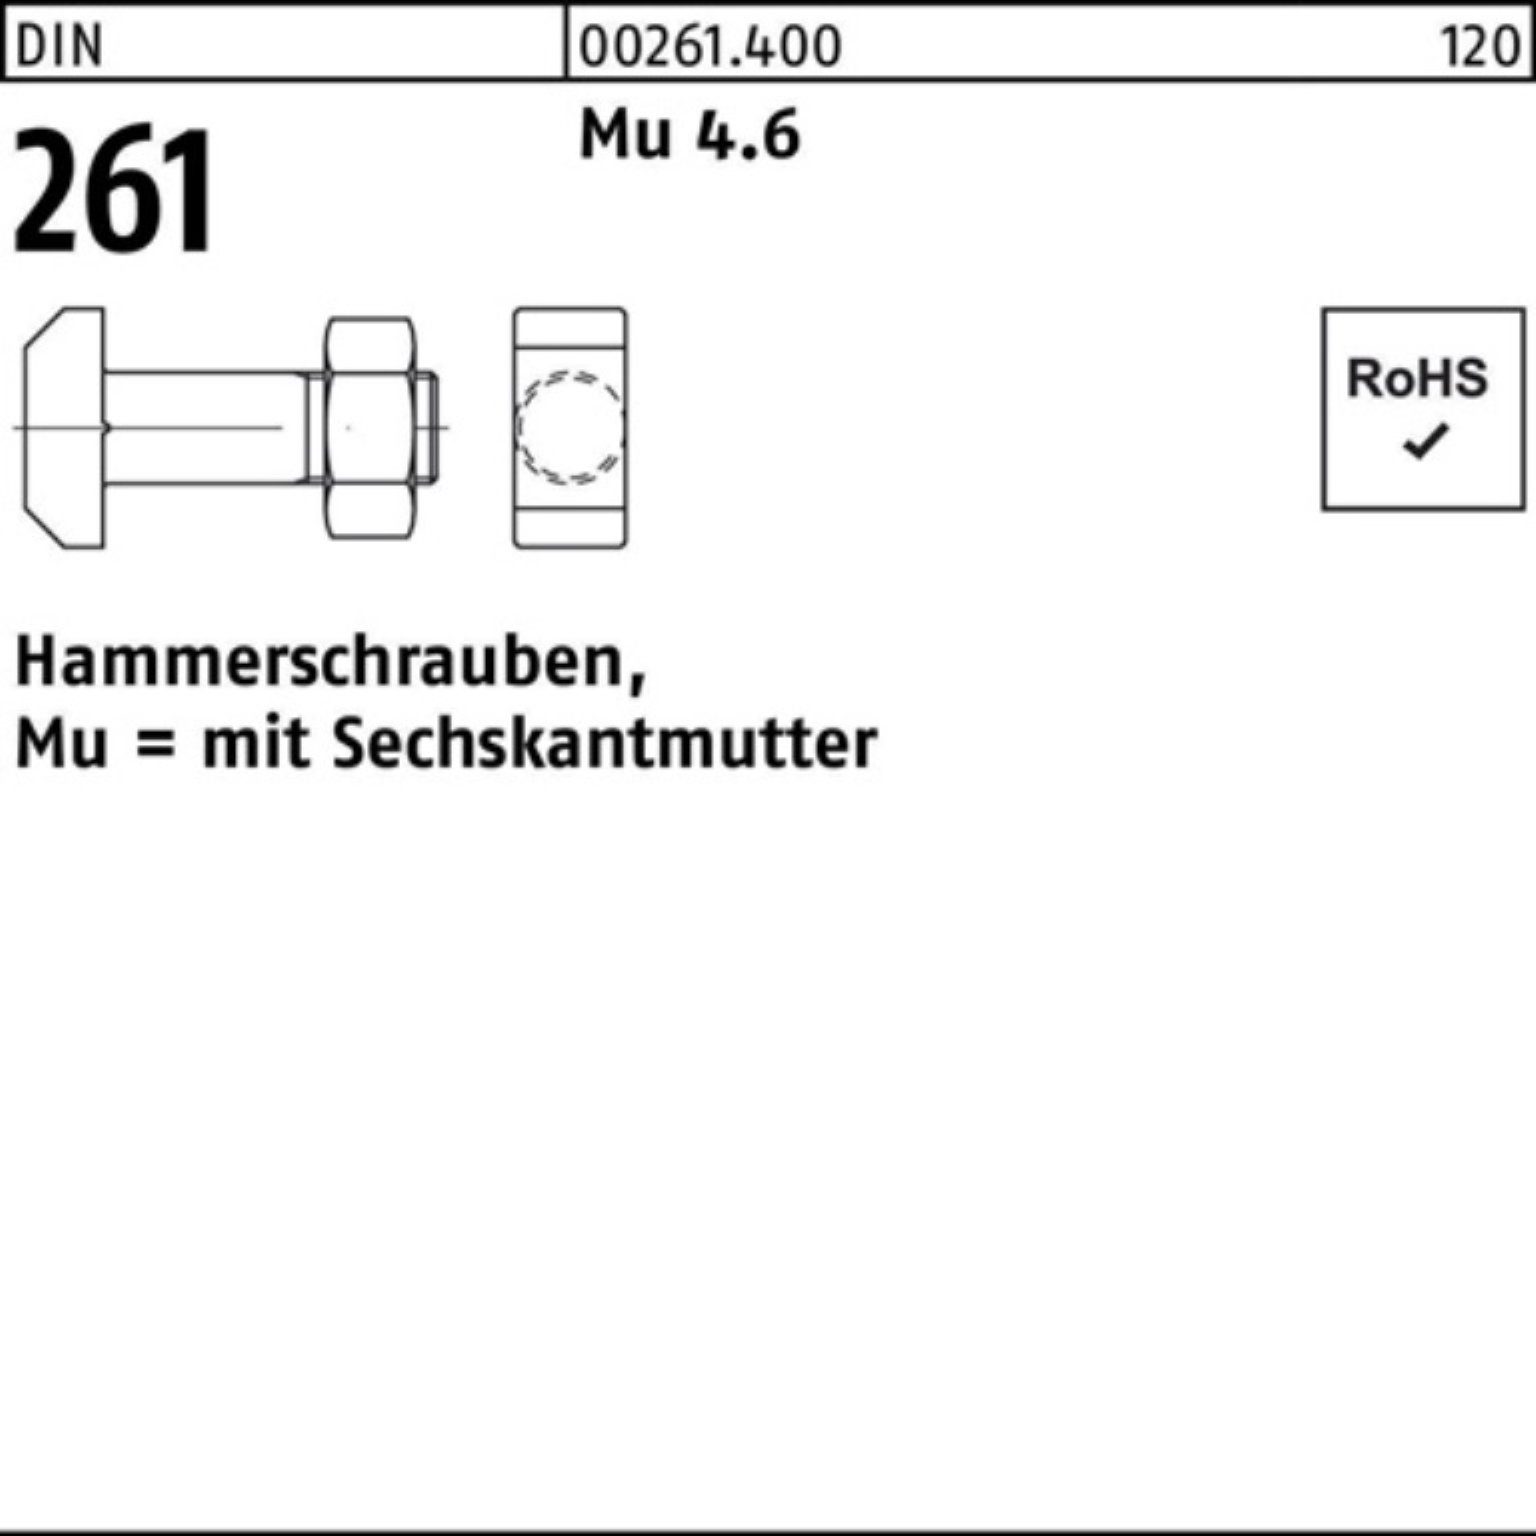 Reyher Schraube Pack Sechskantmutter 4.6 Hammerschraube 40 Mu M10x St 261 100er DIN 25